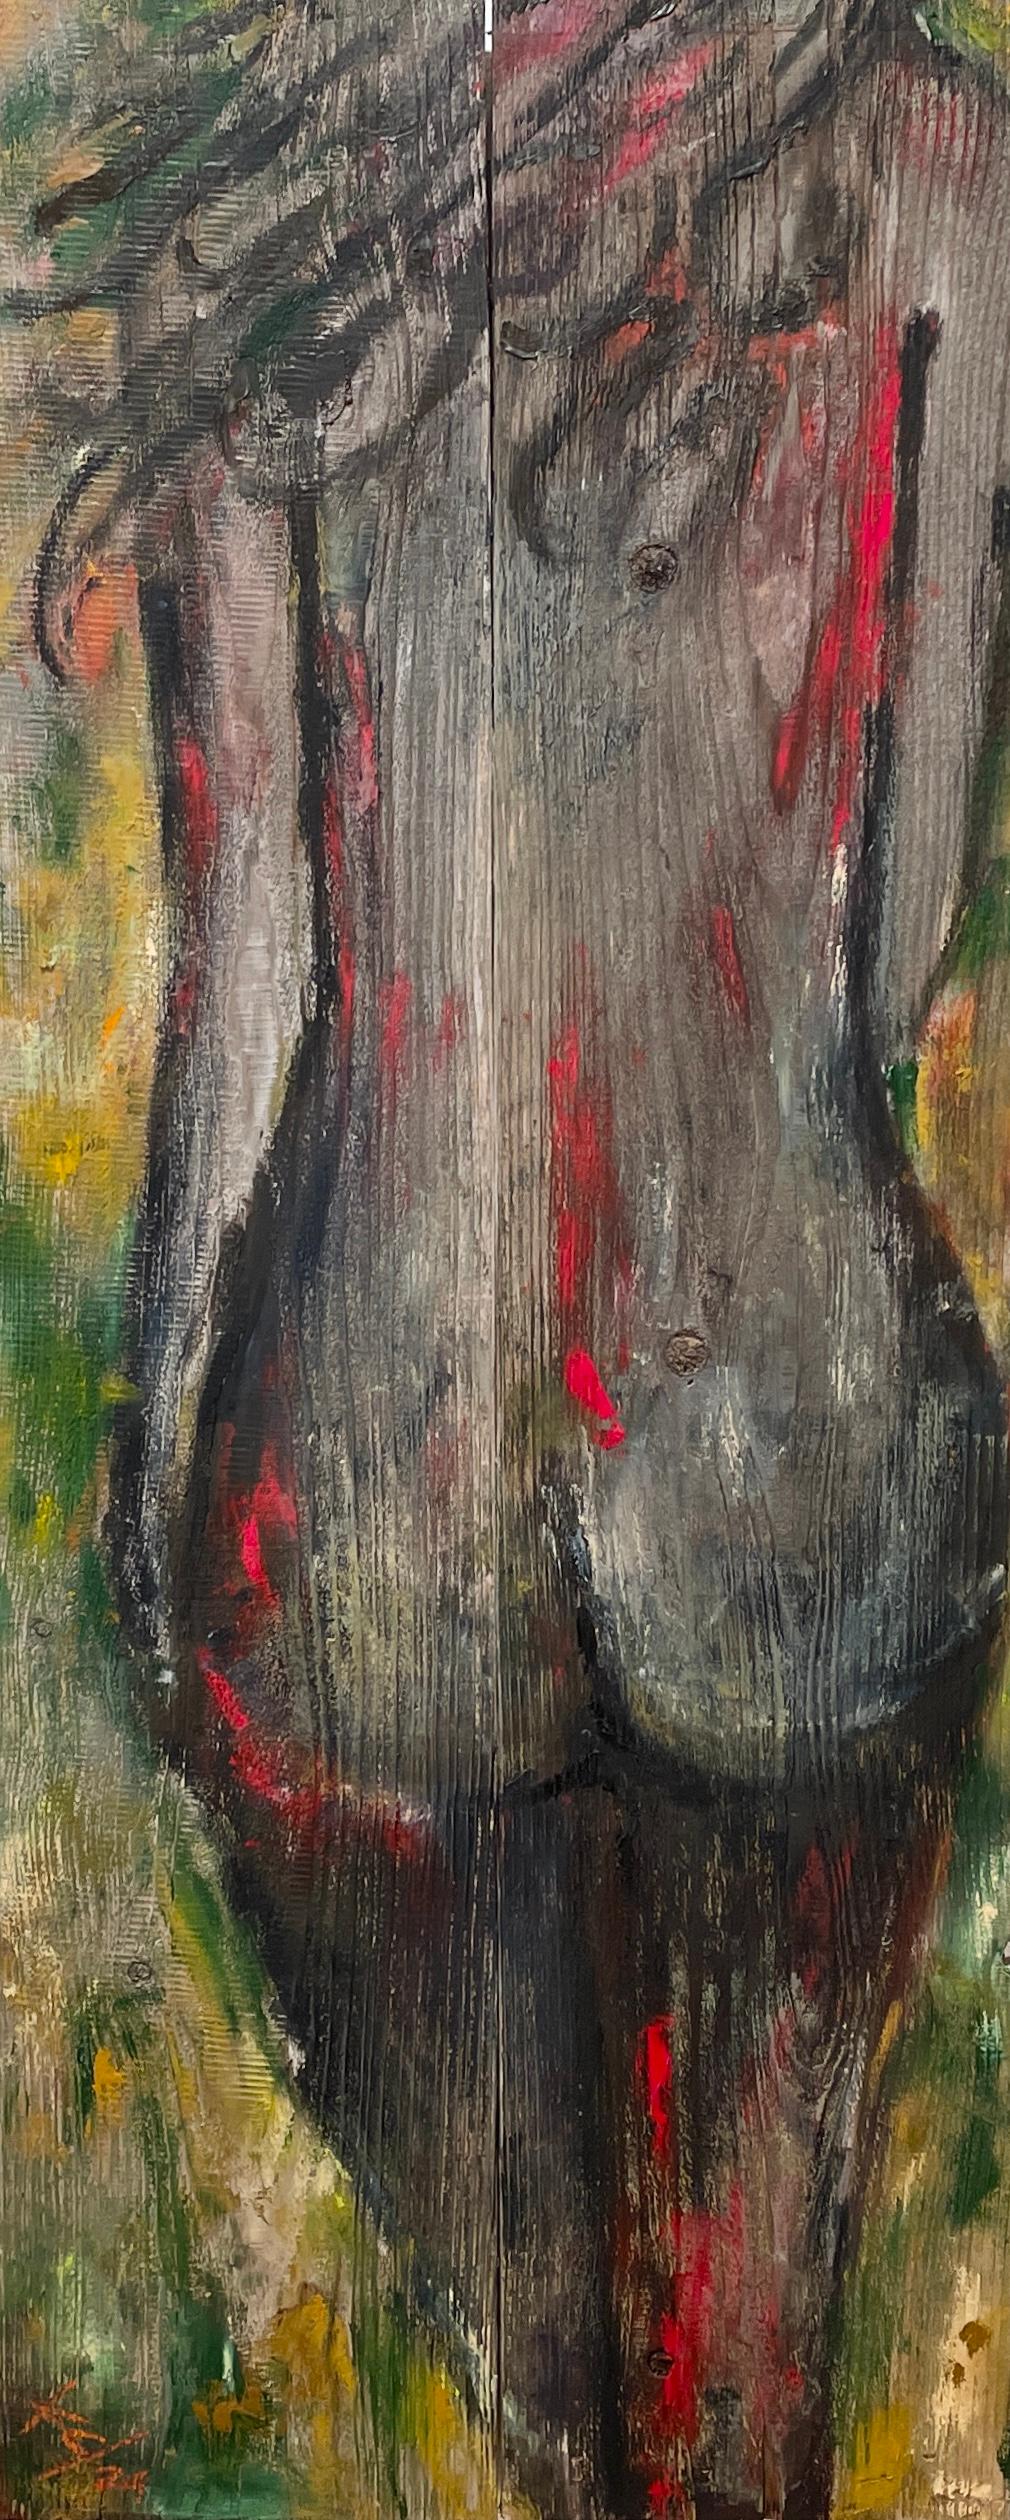 Figurative Painting Kristy Chettle - Ooh La La' - Femme nue figurative - Peinture à l'huile contemporaine sur Wood